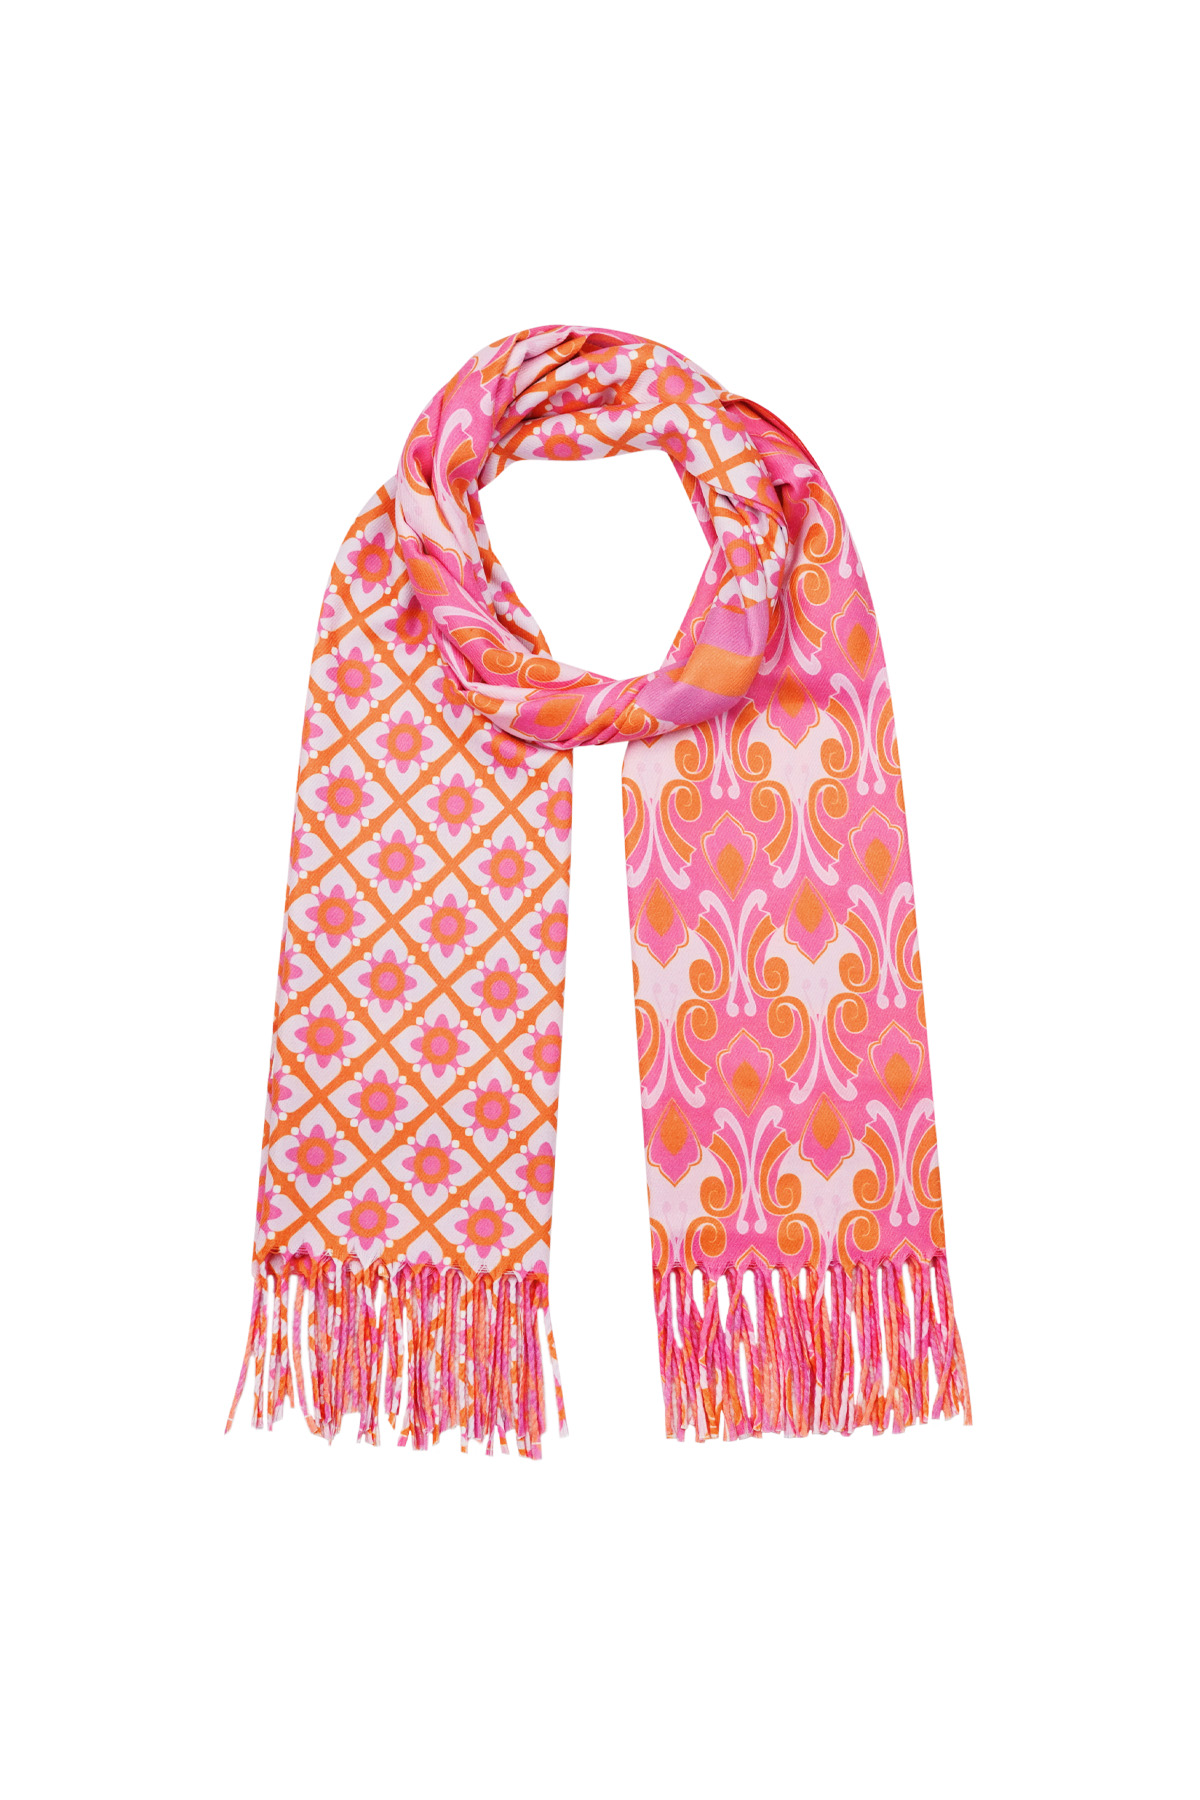 Duo foulard imprimé - rose-orange Image2